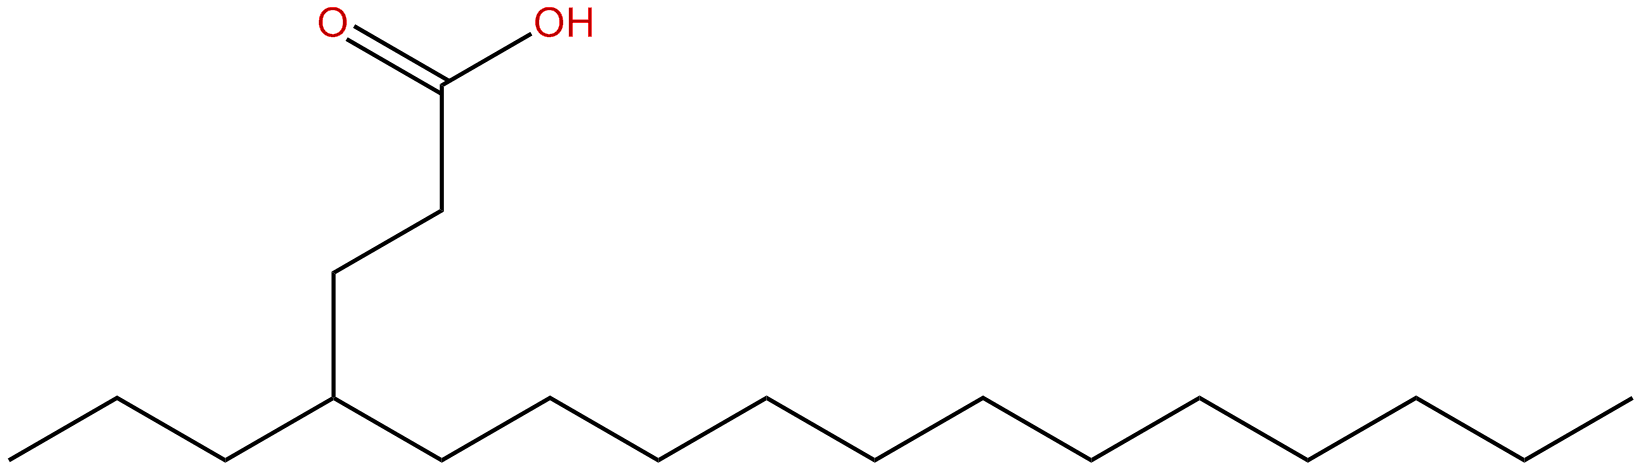 Image of 4-propylhexadecanoic acid